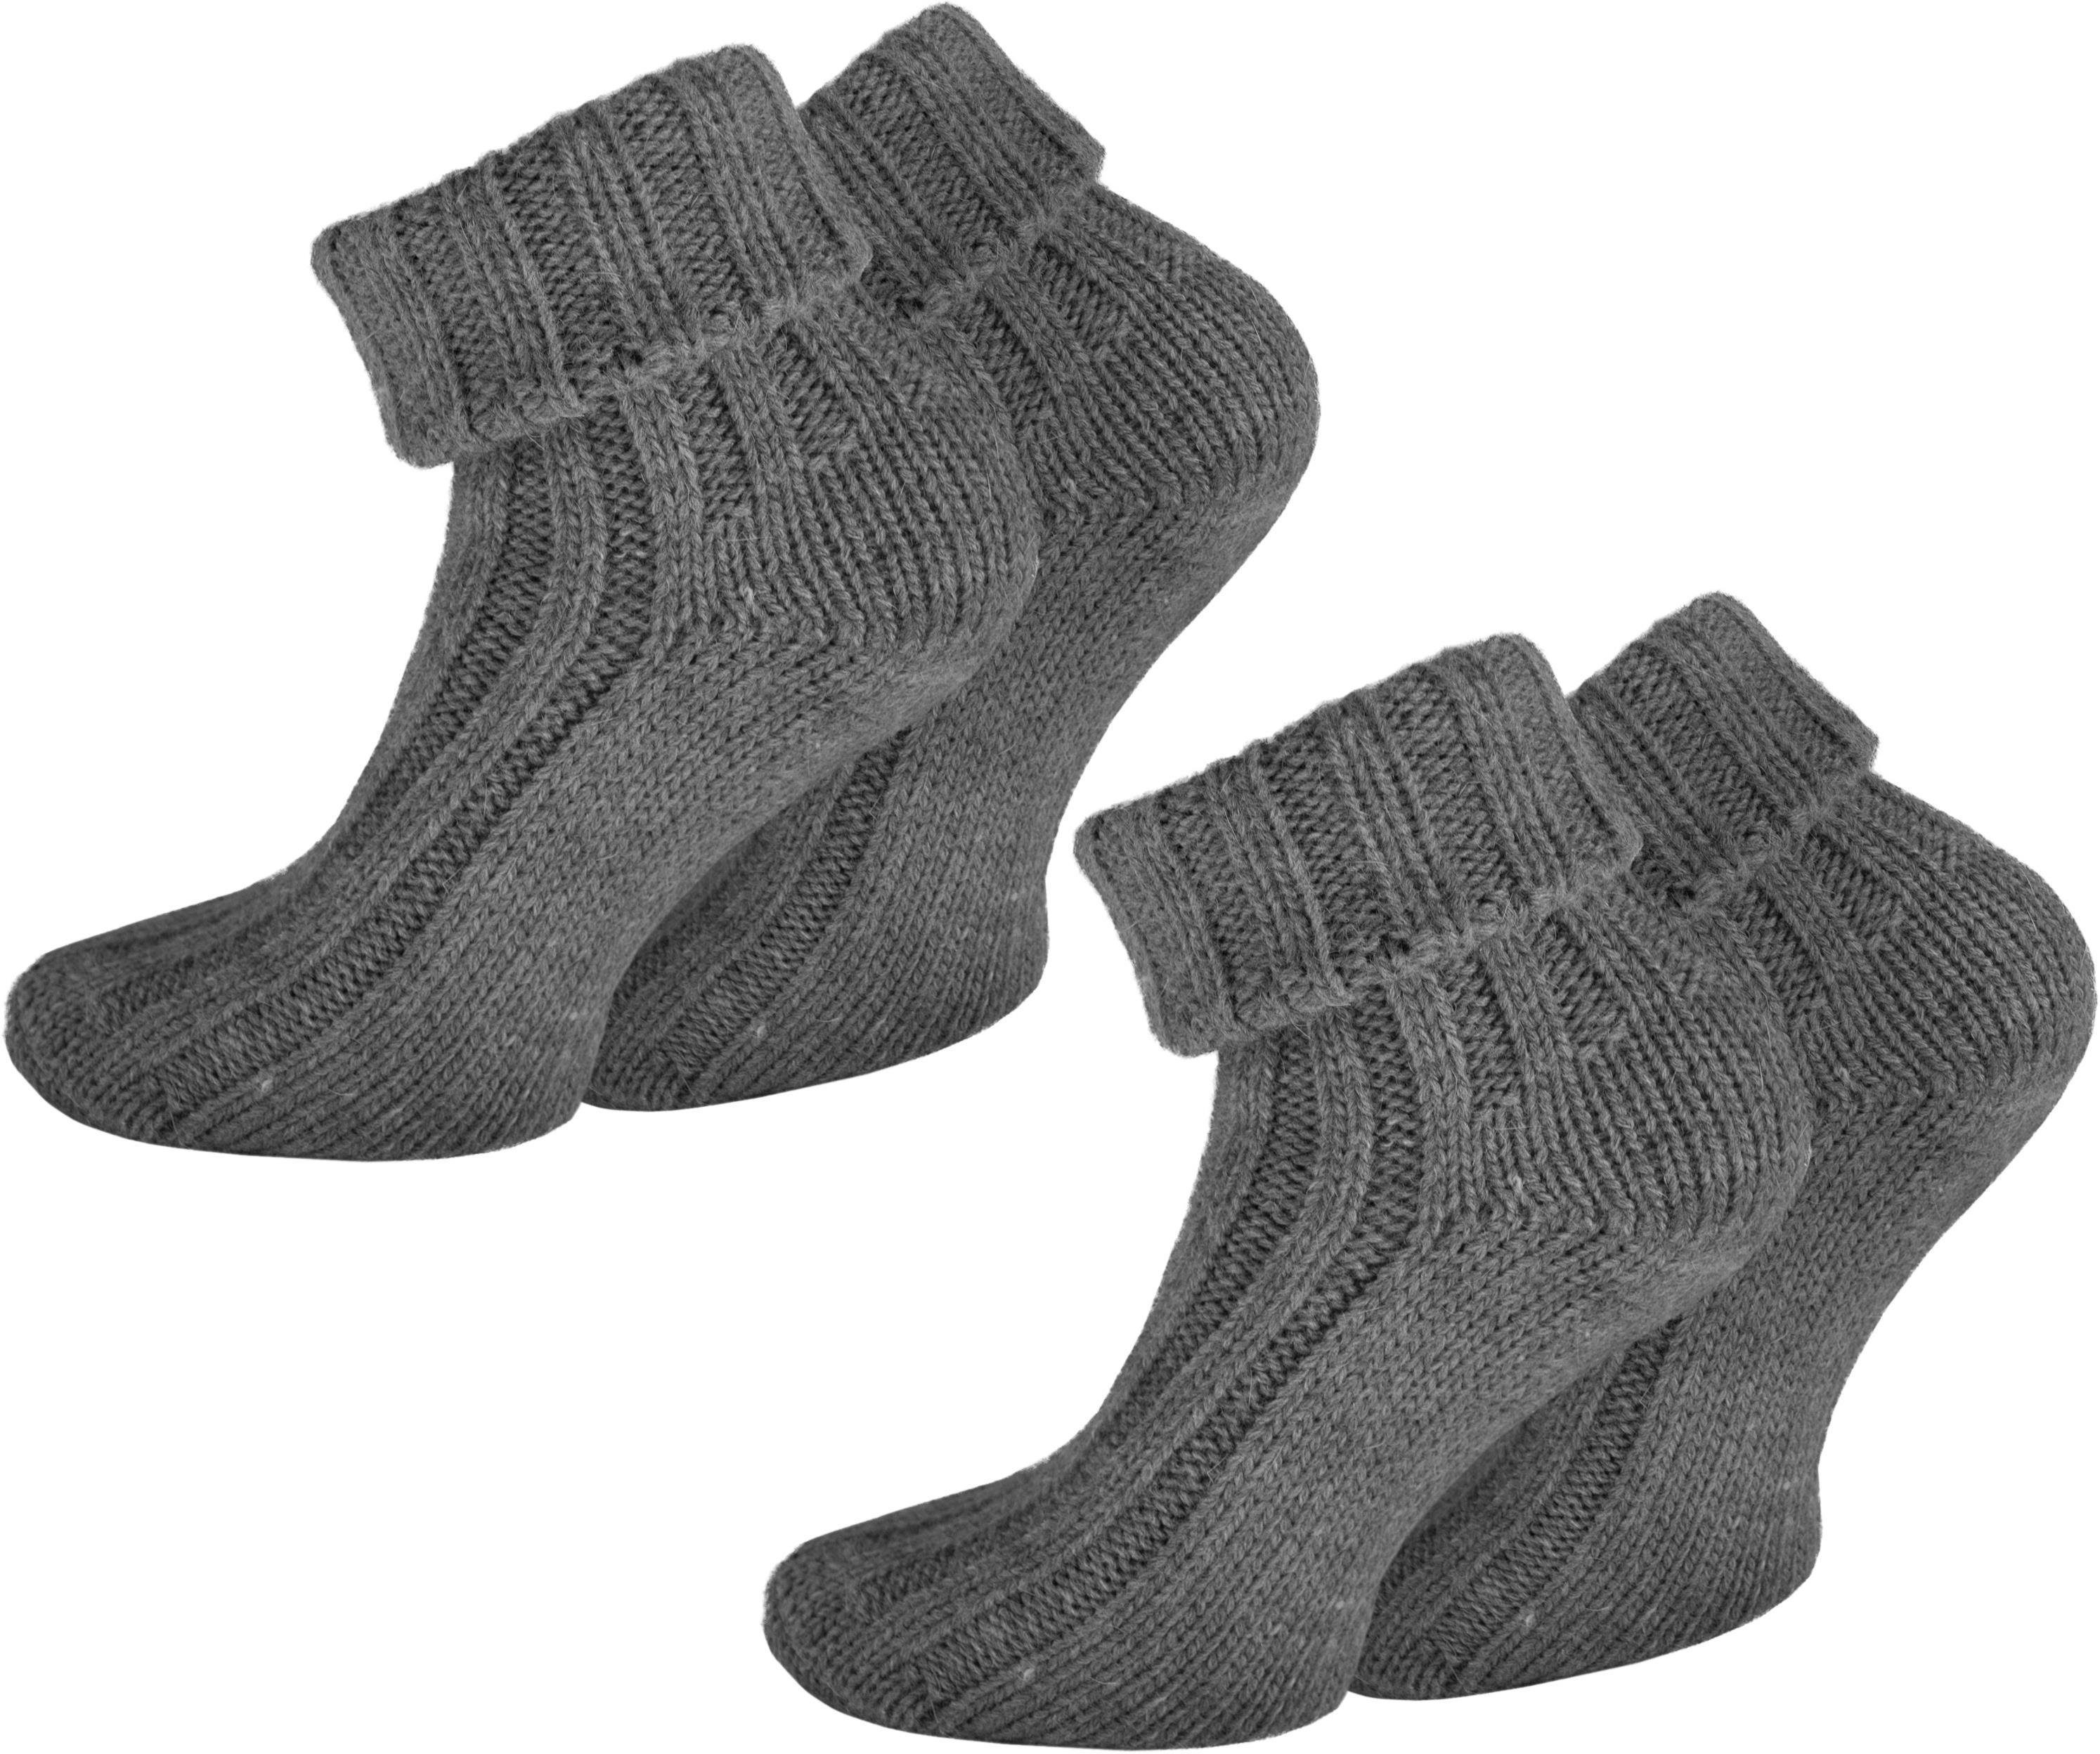 Sport Funktionswäsche normani Thermosocken 2 Paar Alpaka-Socken mit Umschlag (2 Paar) hochwertige Alpaka-Wolle